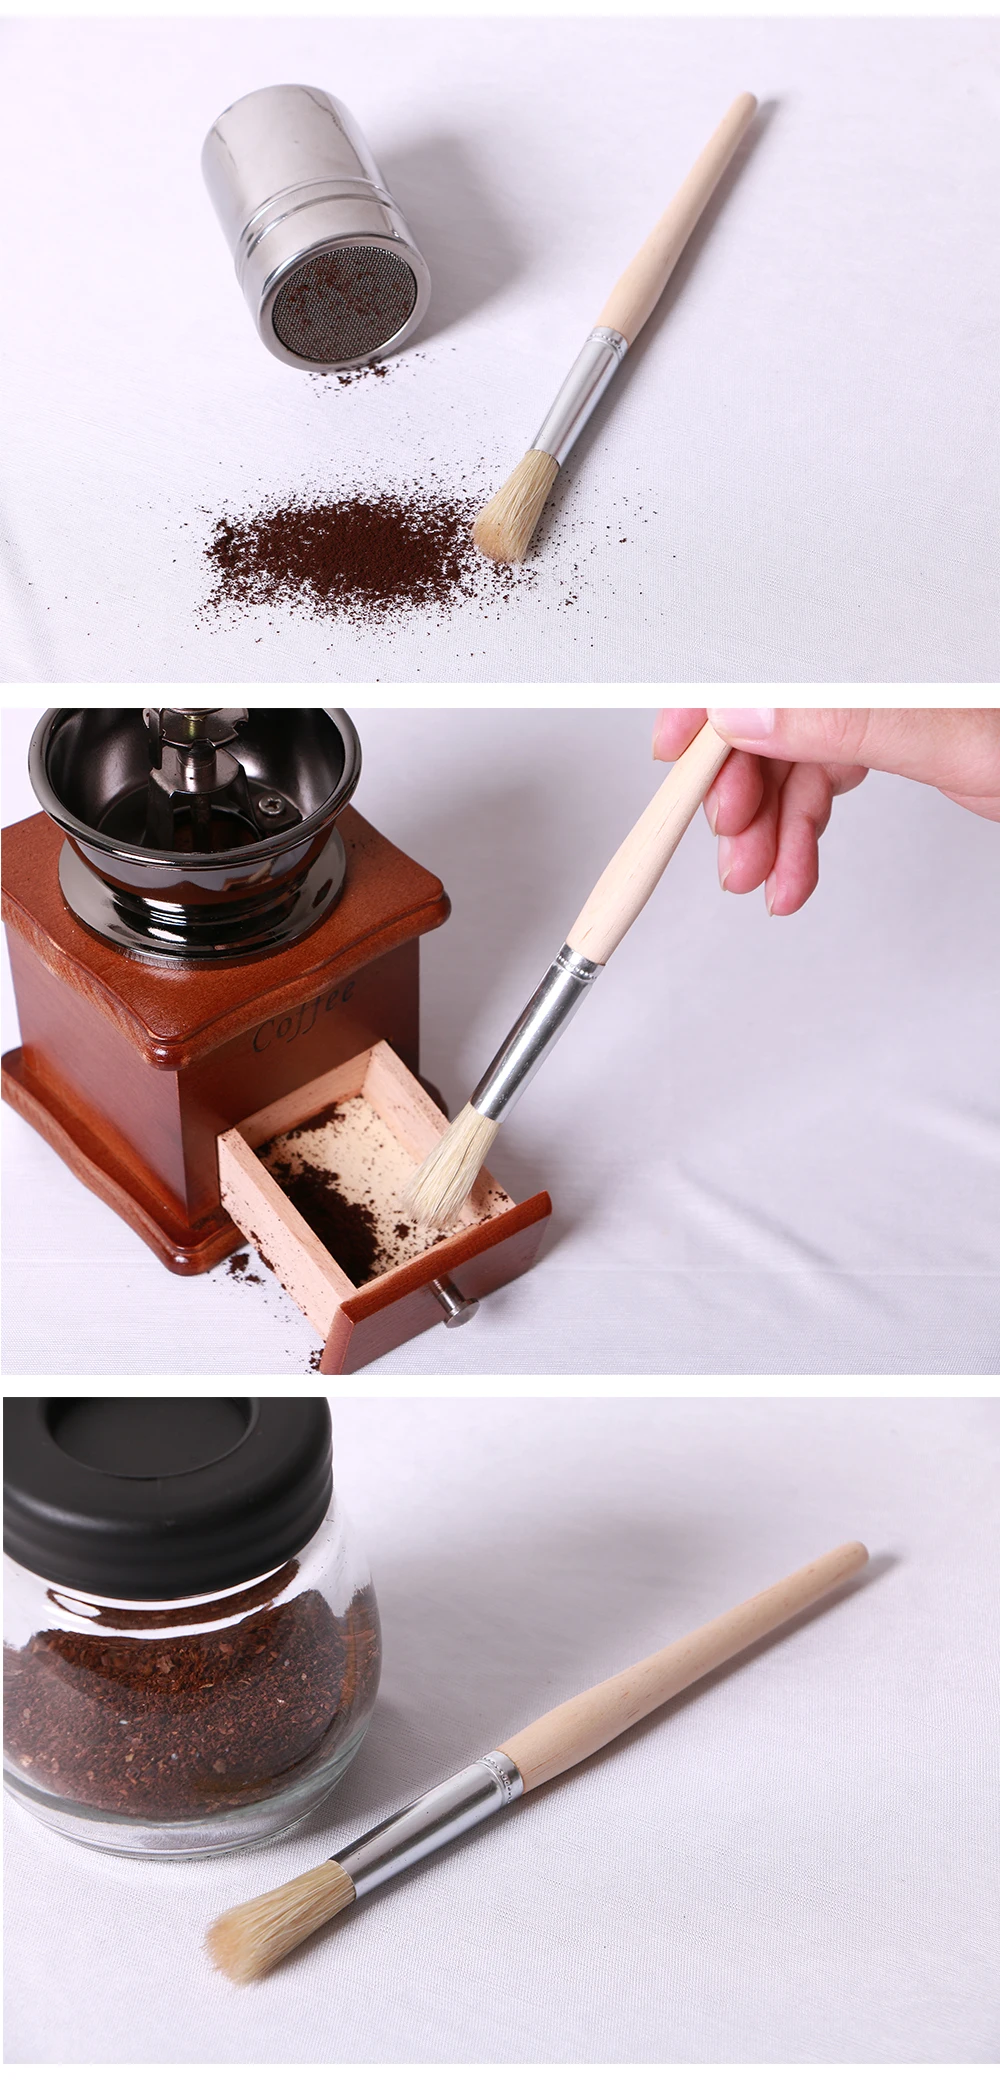 XEJONR Кофе шлифовальная кисти 19 см эспрессо машины очистки щетки из щетины ручка деревянная щетка для очистки Кофе ware 1 шт